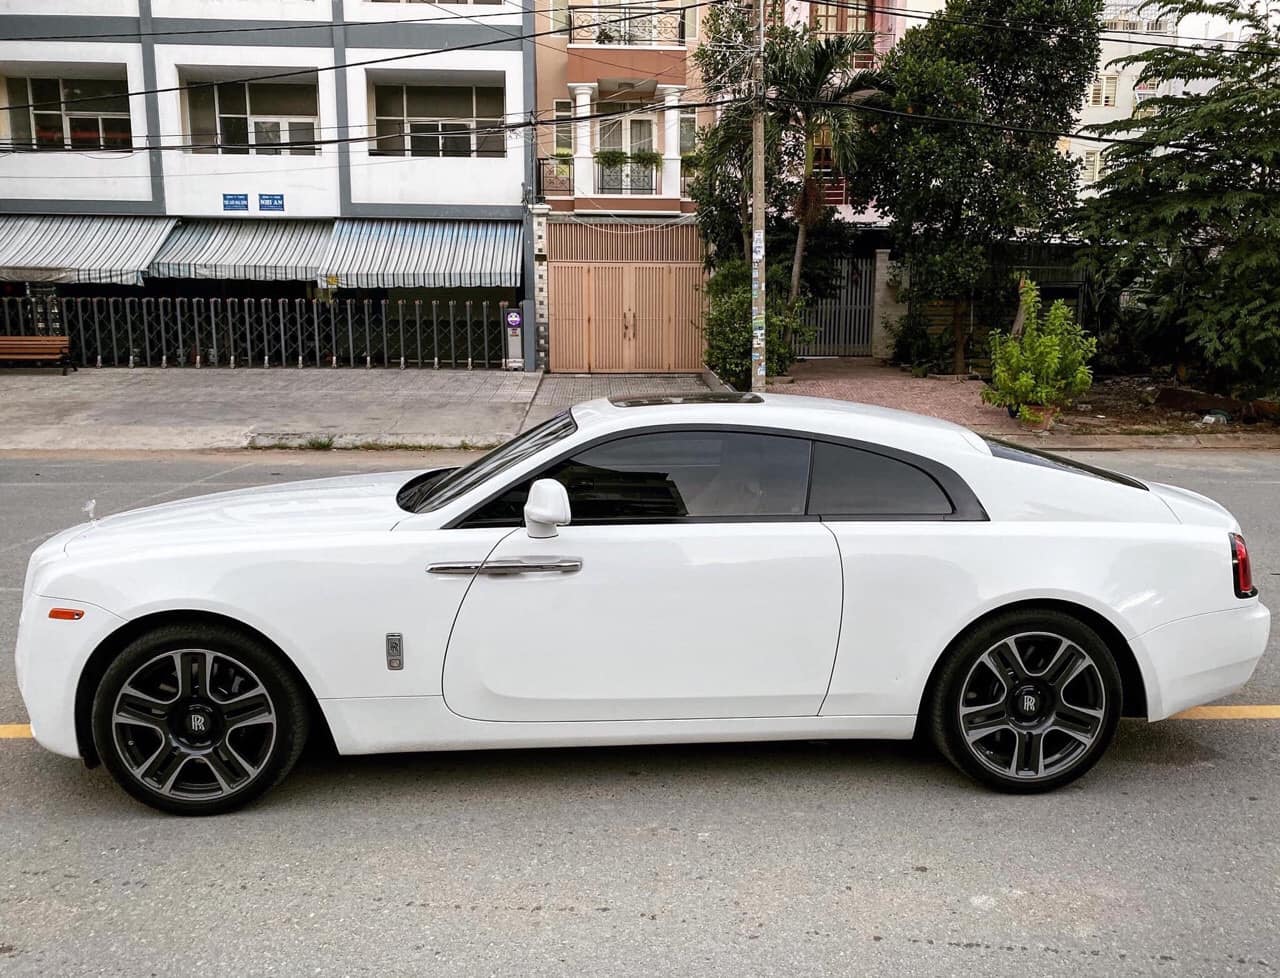 Đánh giá xe siêu sang Rolls Royce Wraith màu nâu độc nhất Việt Nam   Baoxehoi